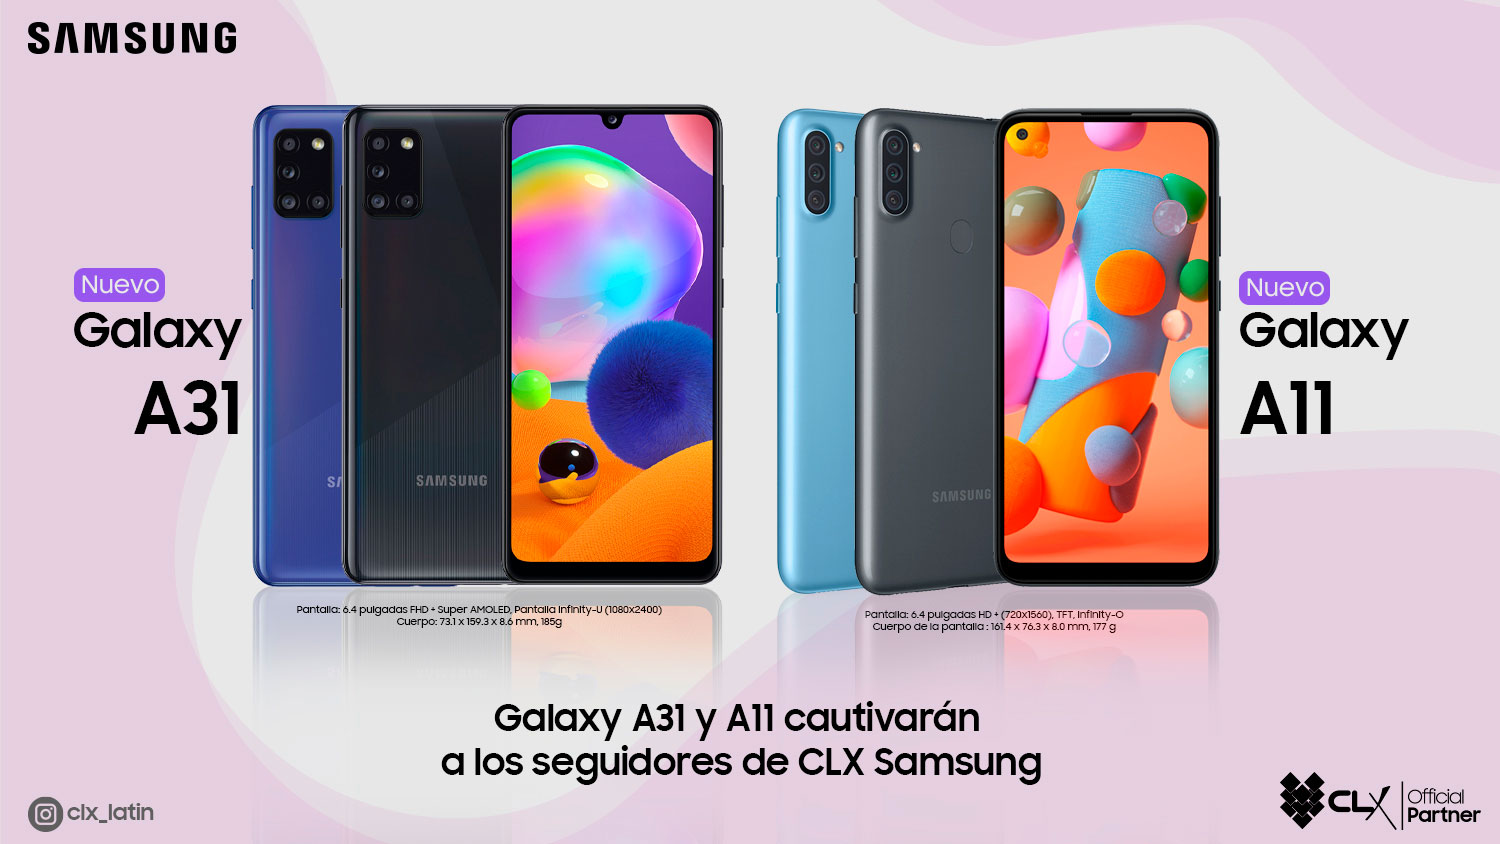 Galaxy A31 y A11 cautivará a los seguidores de CLX Samsung